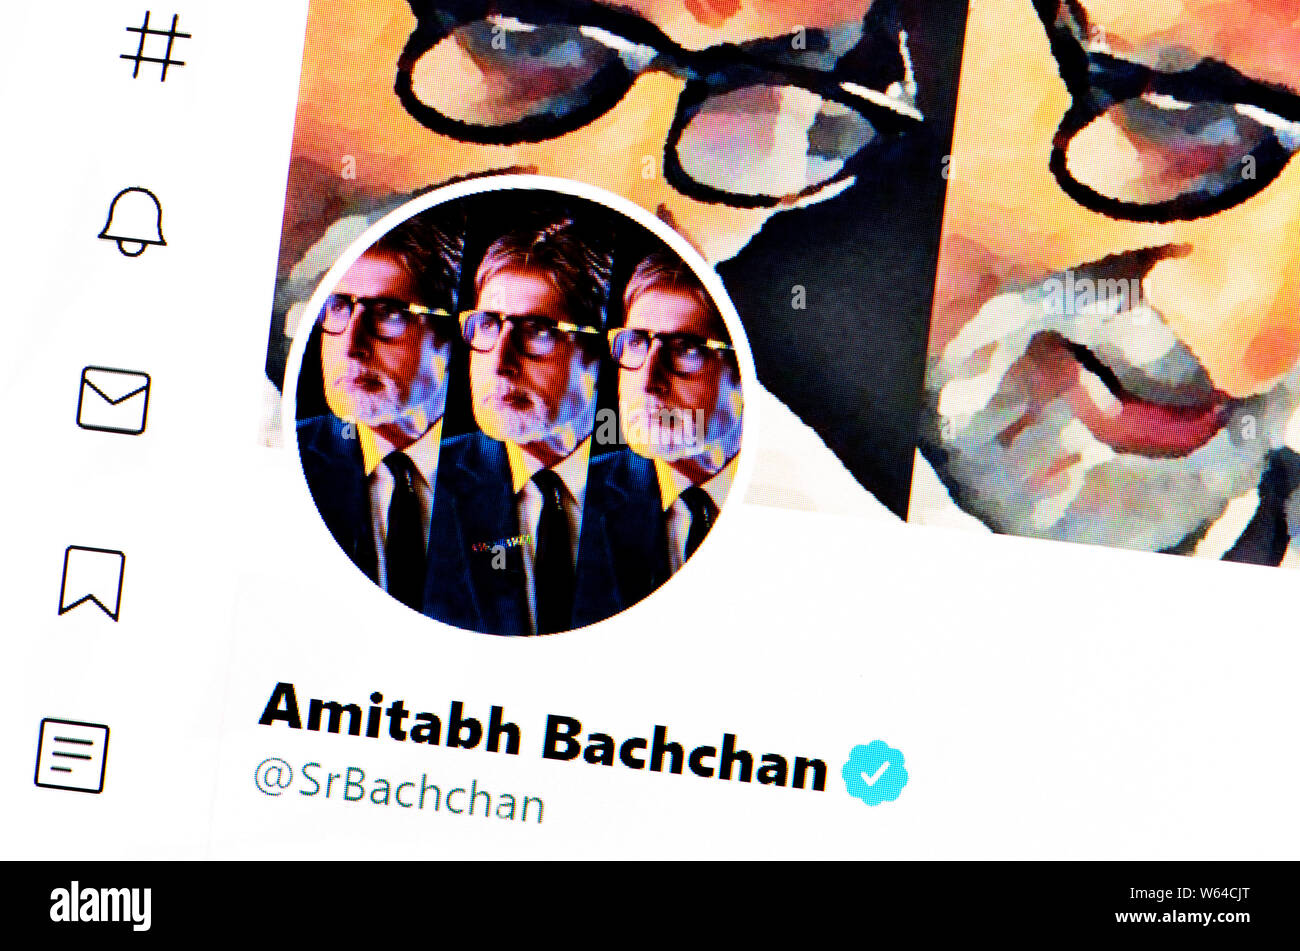 Twitter Seite (Juli 2019) Amitabh Bachchan - Indische Schauspieler Stockfoto